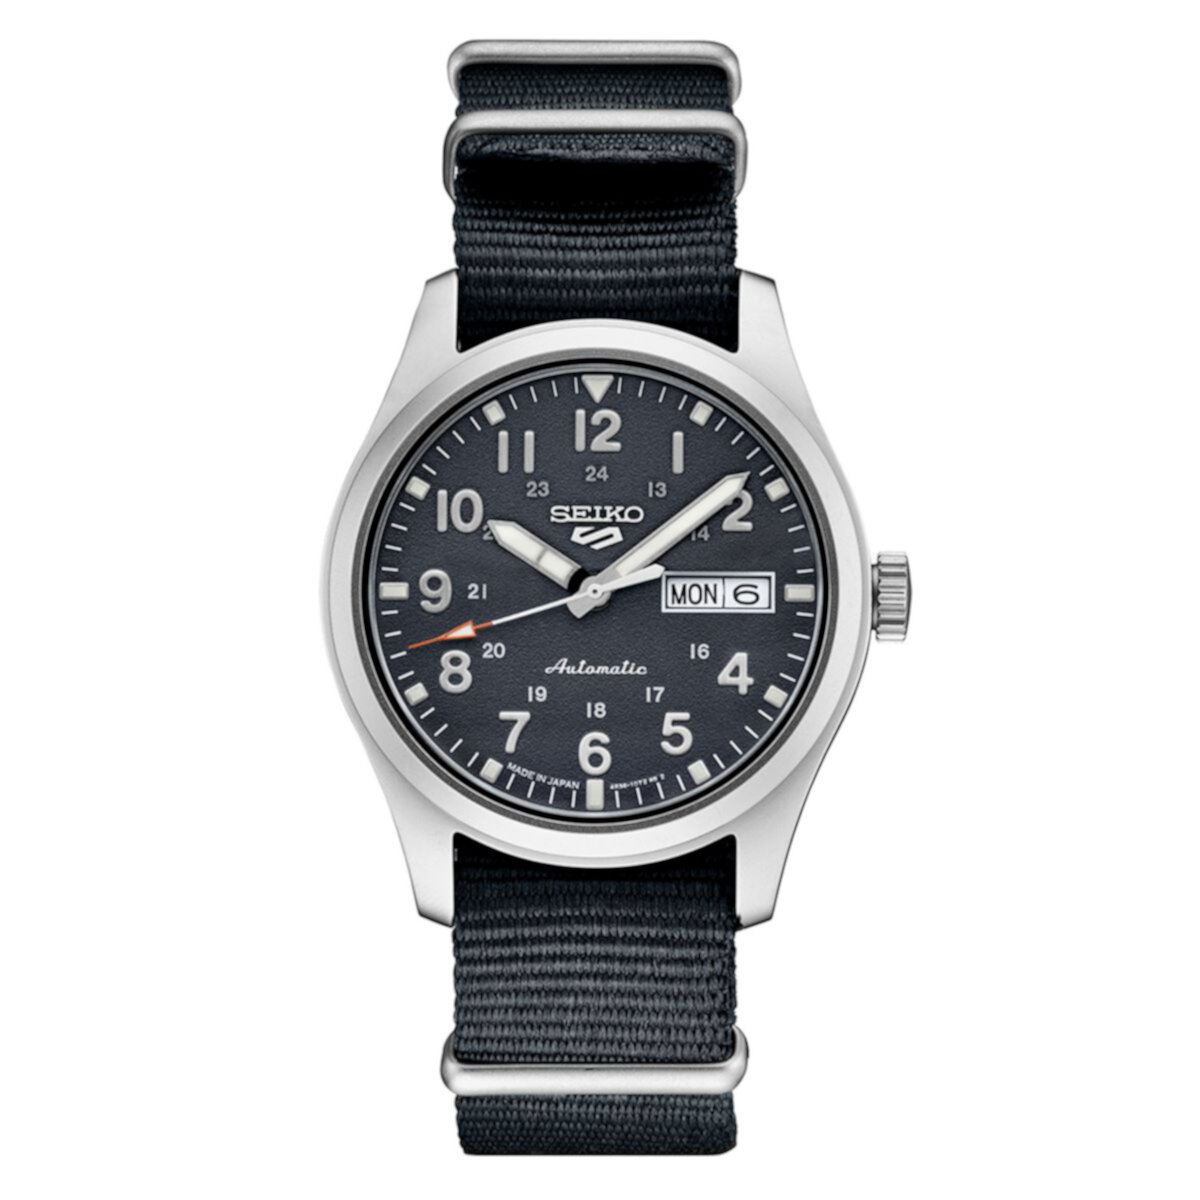 Мужские часы Seiko 5 Sports из нержавеющей стали с серым циферблатом — SRPG31 Seiko